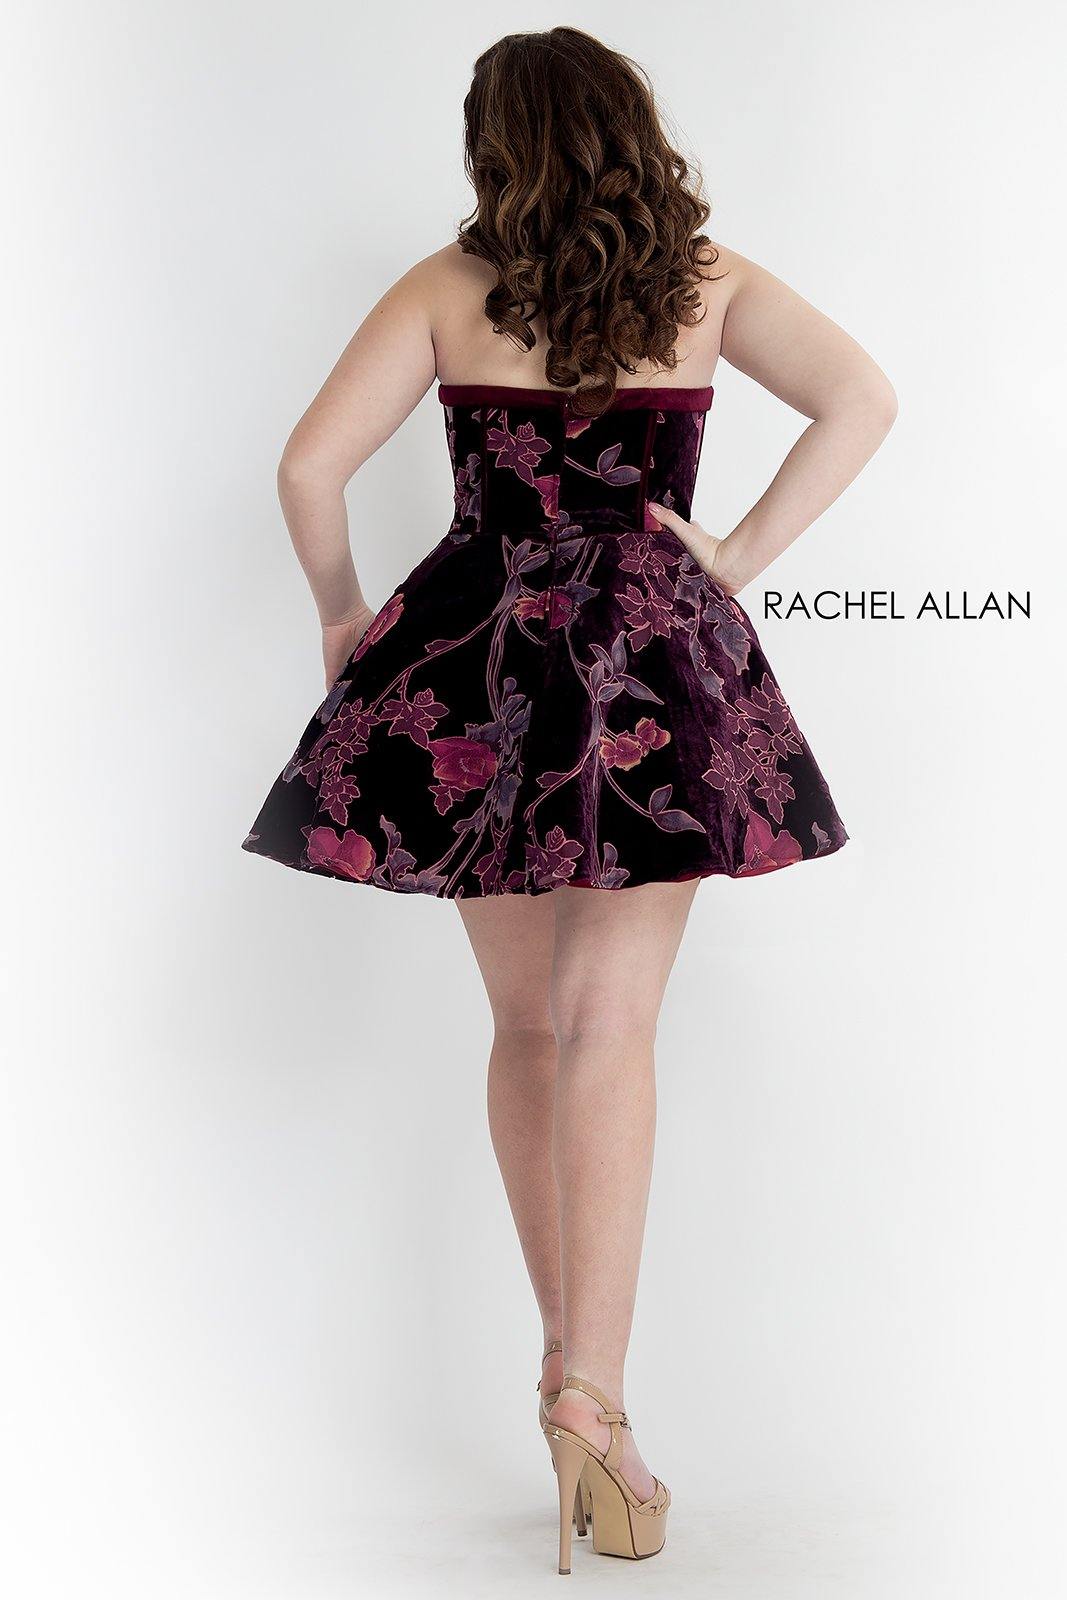 Rachel Allan Strapless Curve Short Dress - The Dress Outlet